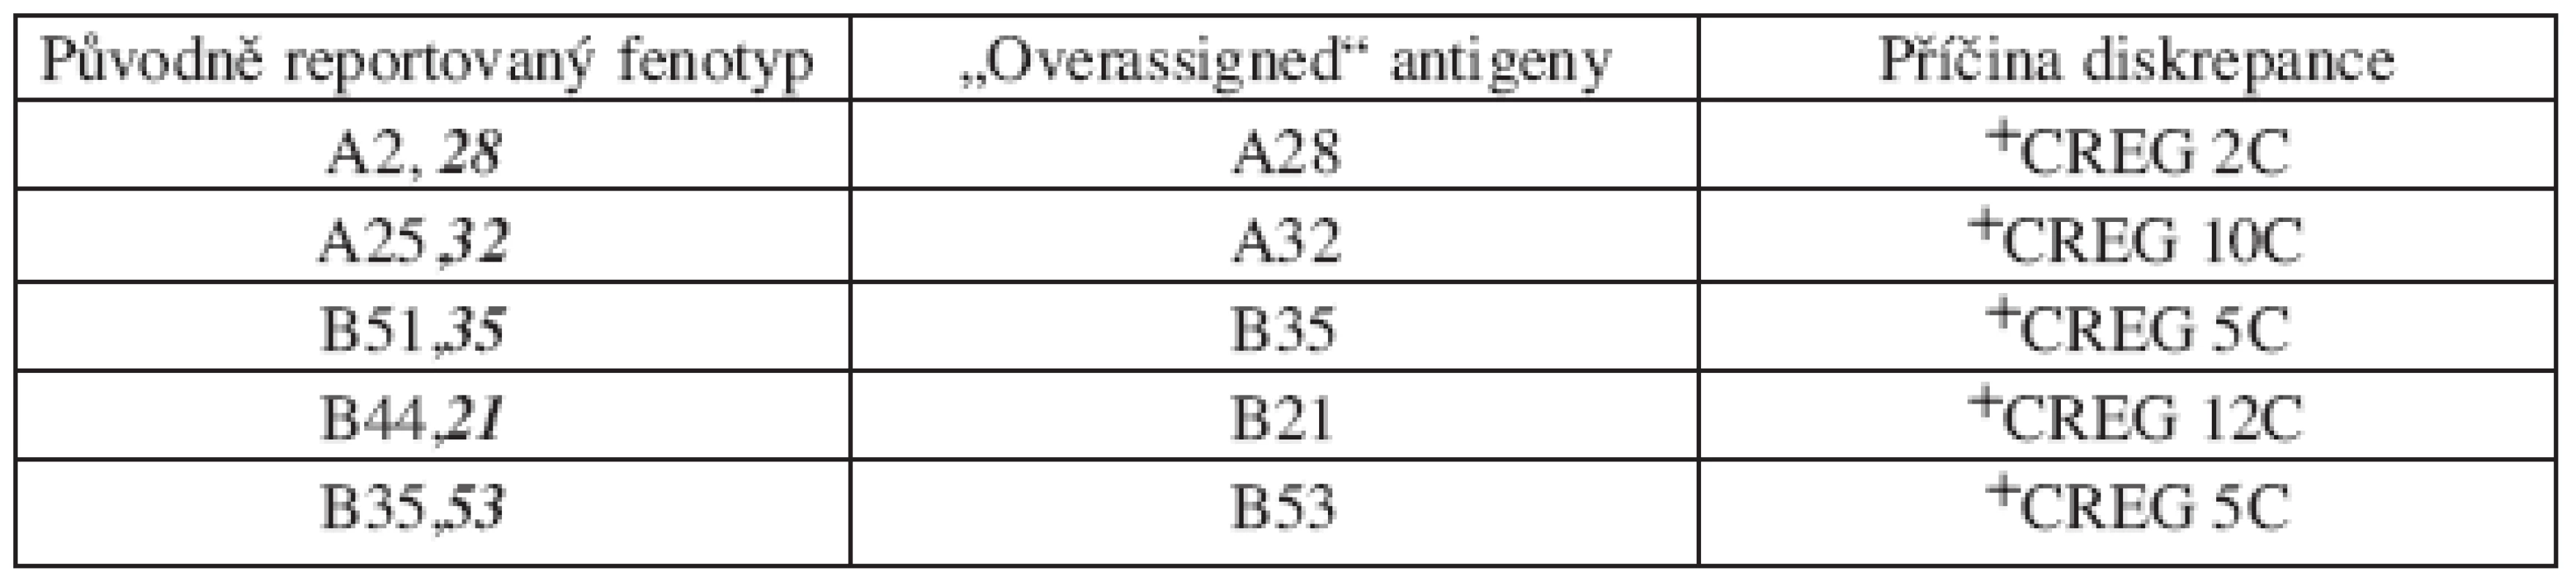 Seznam sérologických diskrepancí dle CT výsledků – antigeny detekované sérologicky,
ale nepřítomné („overassigned“ ) – chyba typu III, 5 dárců.